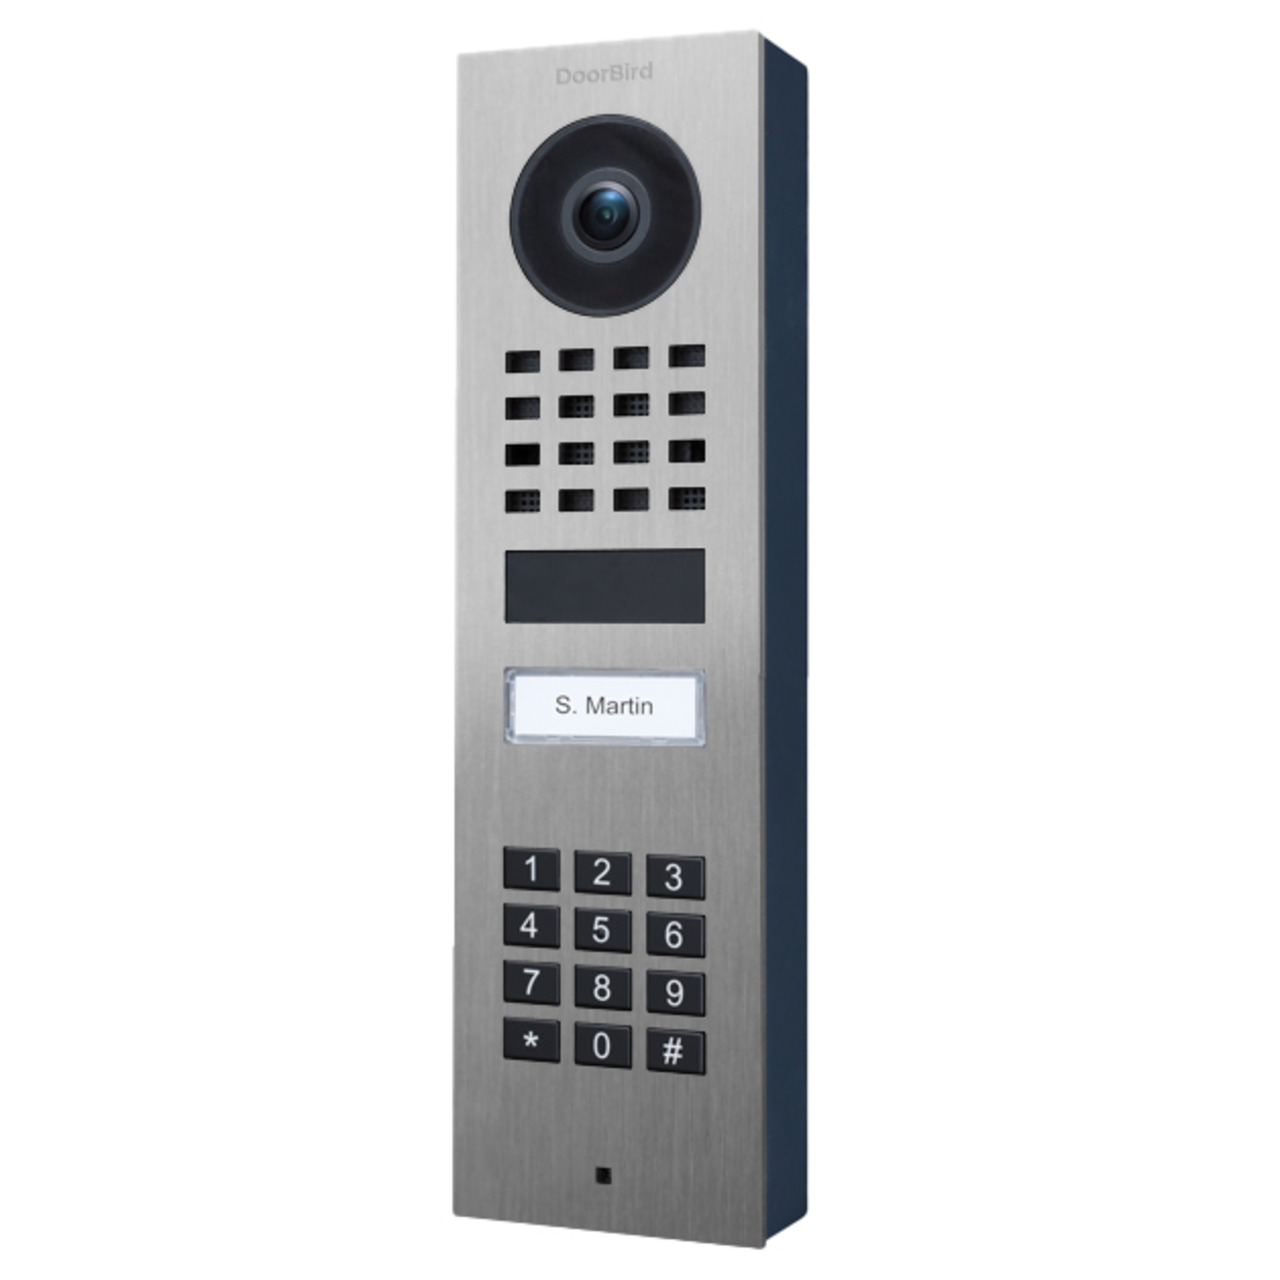 DoorBird WLAN-IP-Video-Keypad-Trstation D1101KV Edelstahl V4A- Aufputz unter Haustechnik